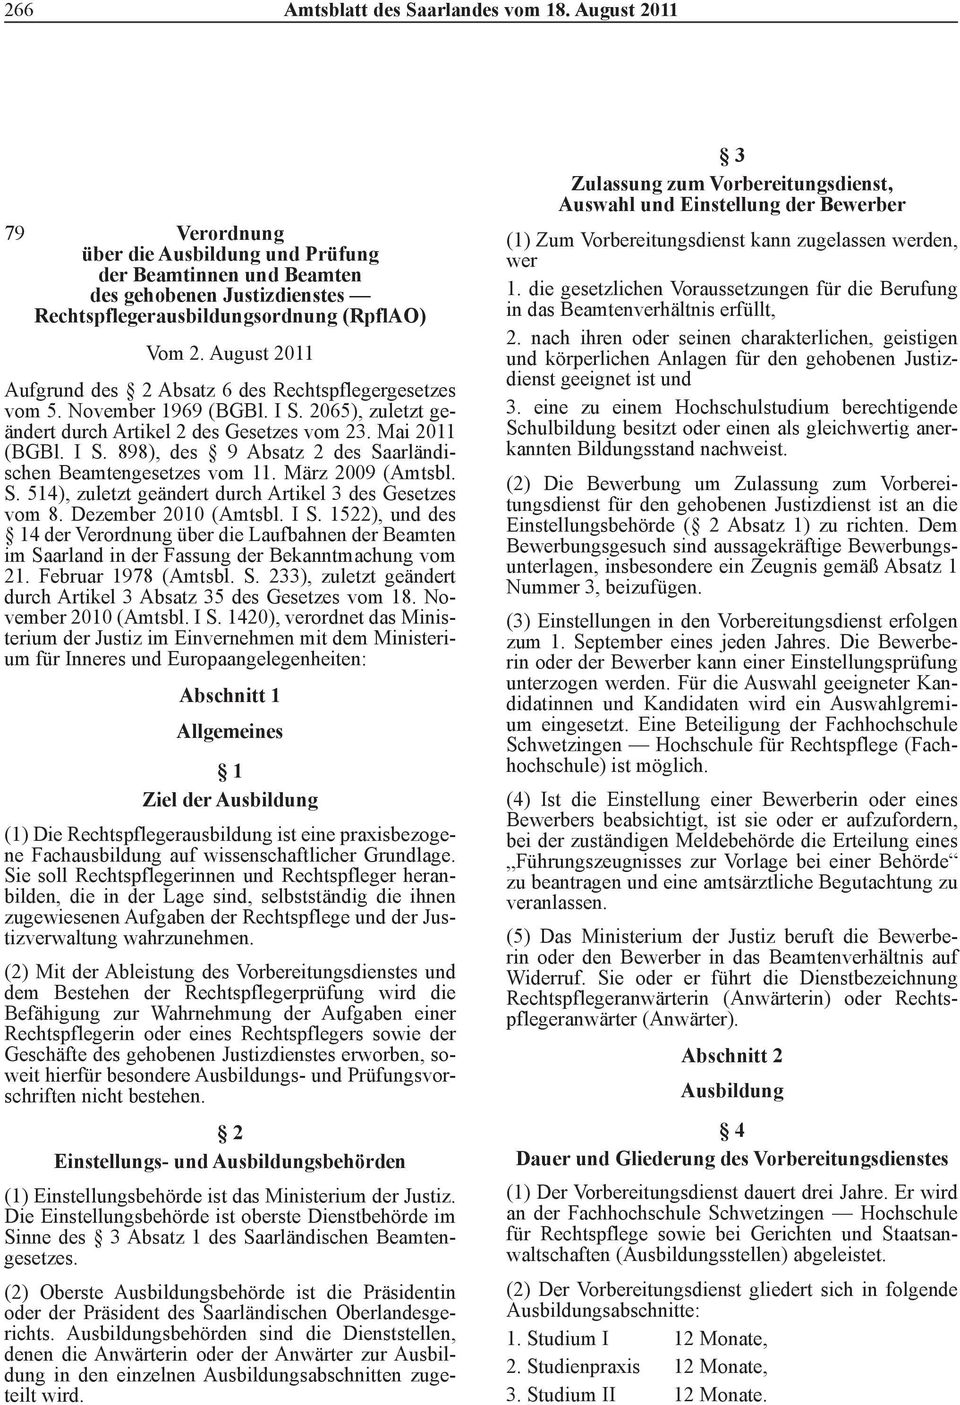 März 2009 (Amtsbl. S. 514), zuletzt geändert durch Artikel 3 des Gesetzes vom 8. Dezember 2010 (Amtsbl. I S.